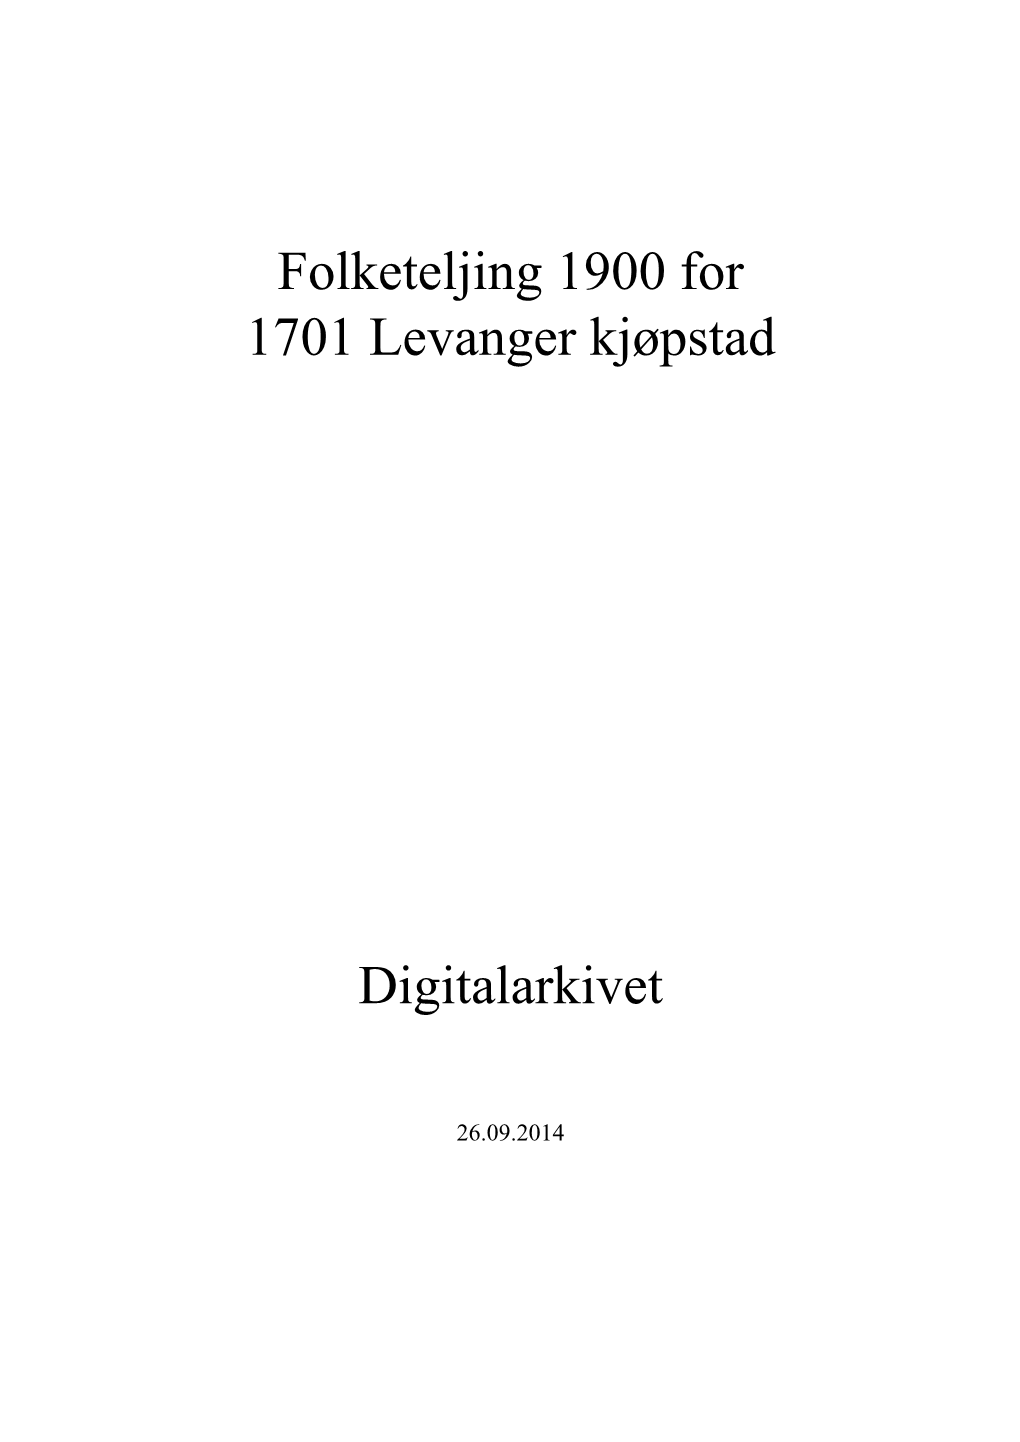 Folketeljing 1900 for 1701 Levanger Kjøpstad Digitalarkivet